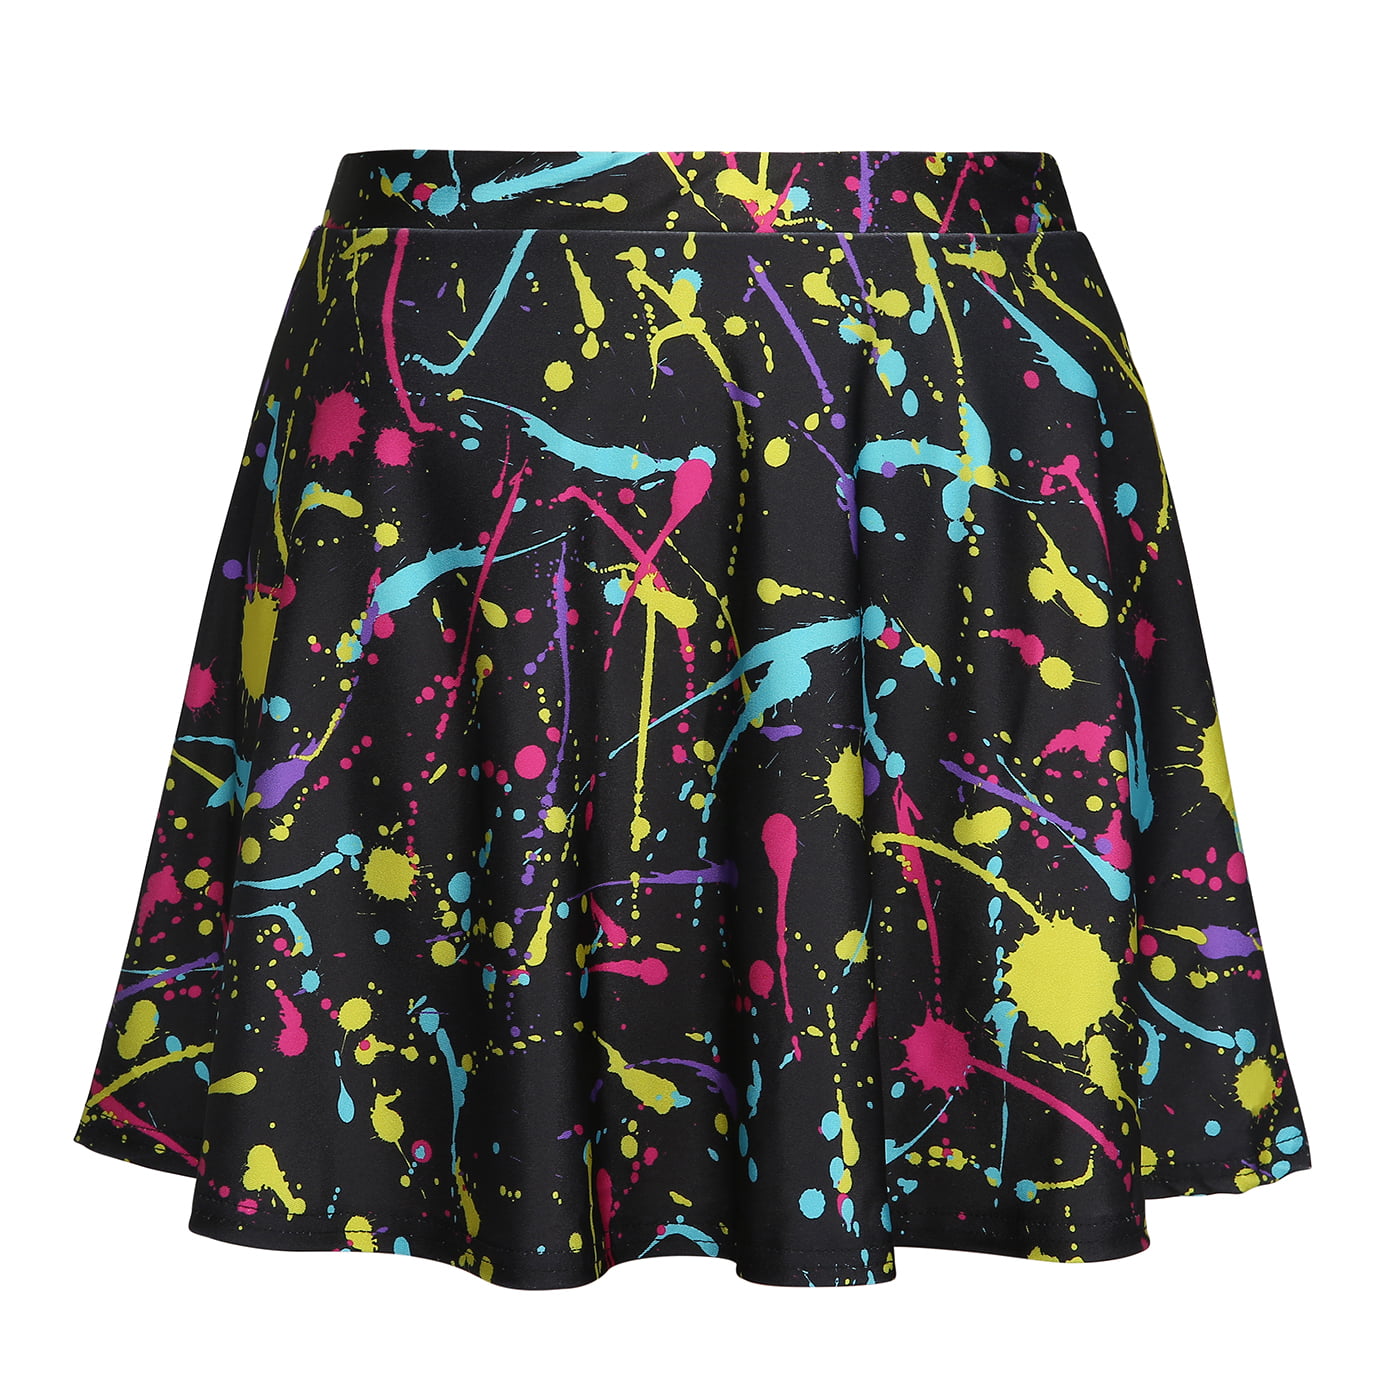 HDE Skirts for Women High Waist Mini Skater Skirt Casual Flared Printed Skirt 